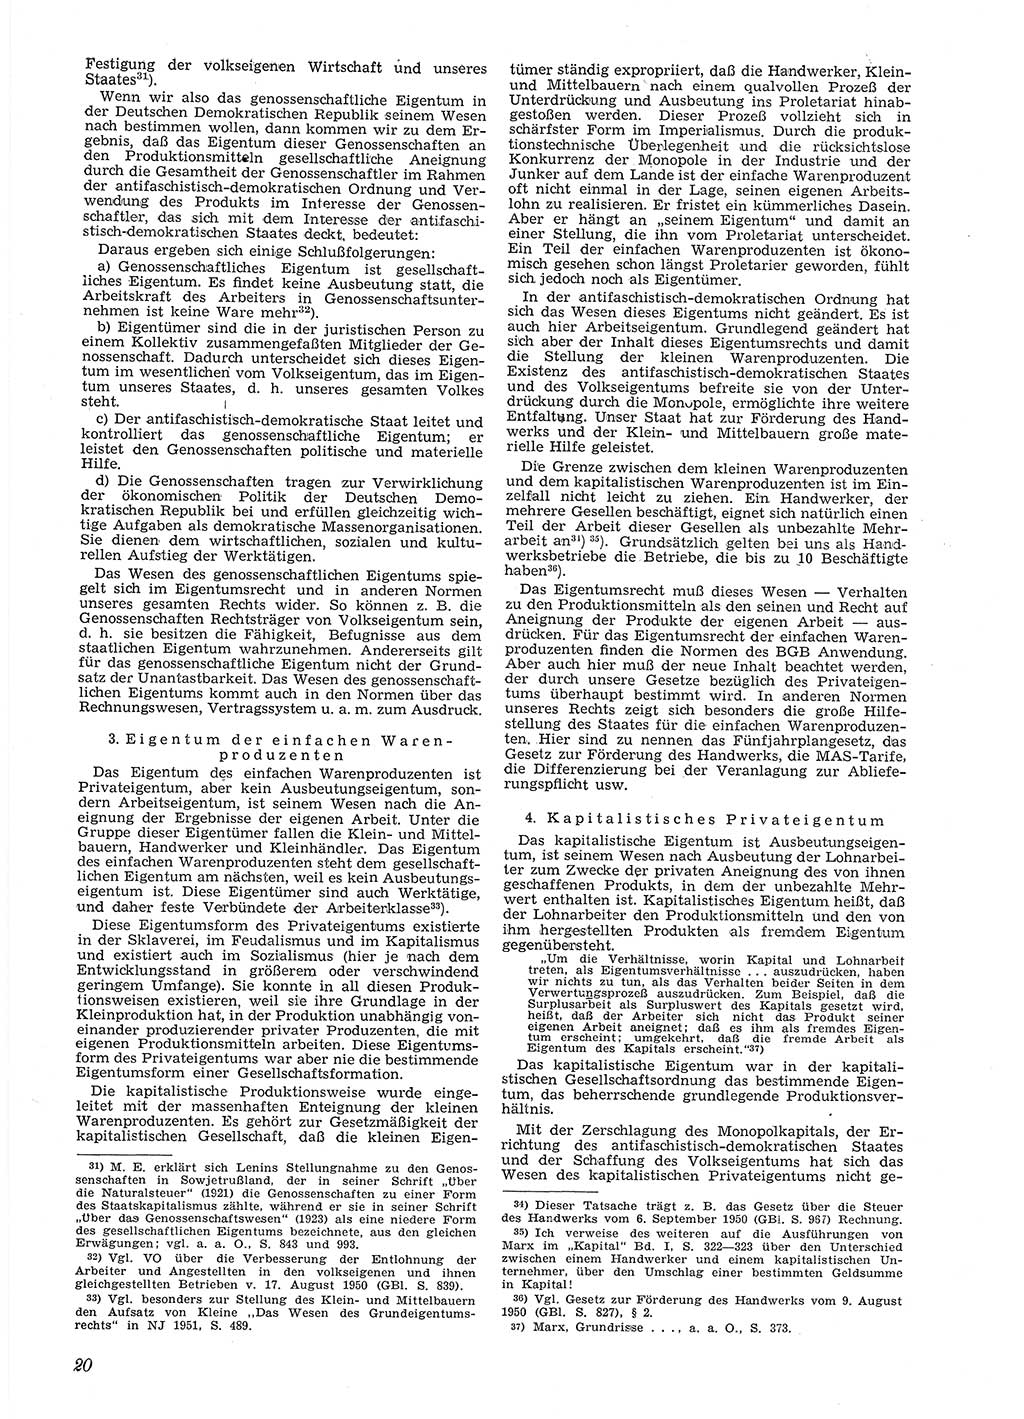 Neue Justiz (NJ), Zeitschrift für Recht und Rechtswissenschaft [Deutsche Demokratische Republik (DDR)], 6. Jahrgang 1952, Seite 20 (NJ DDR 1952, S. 20)